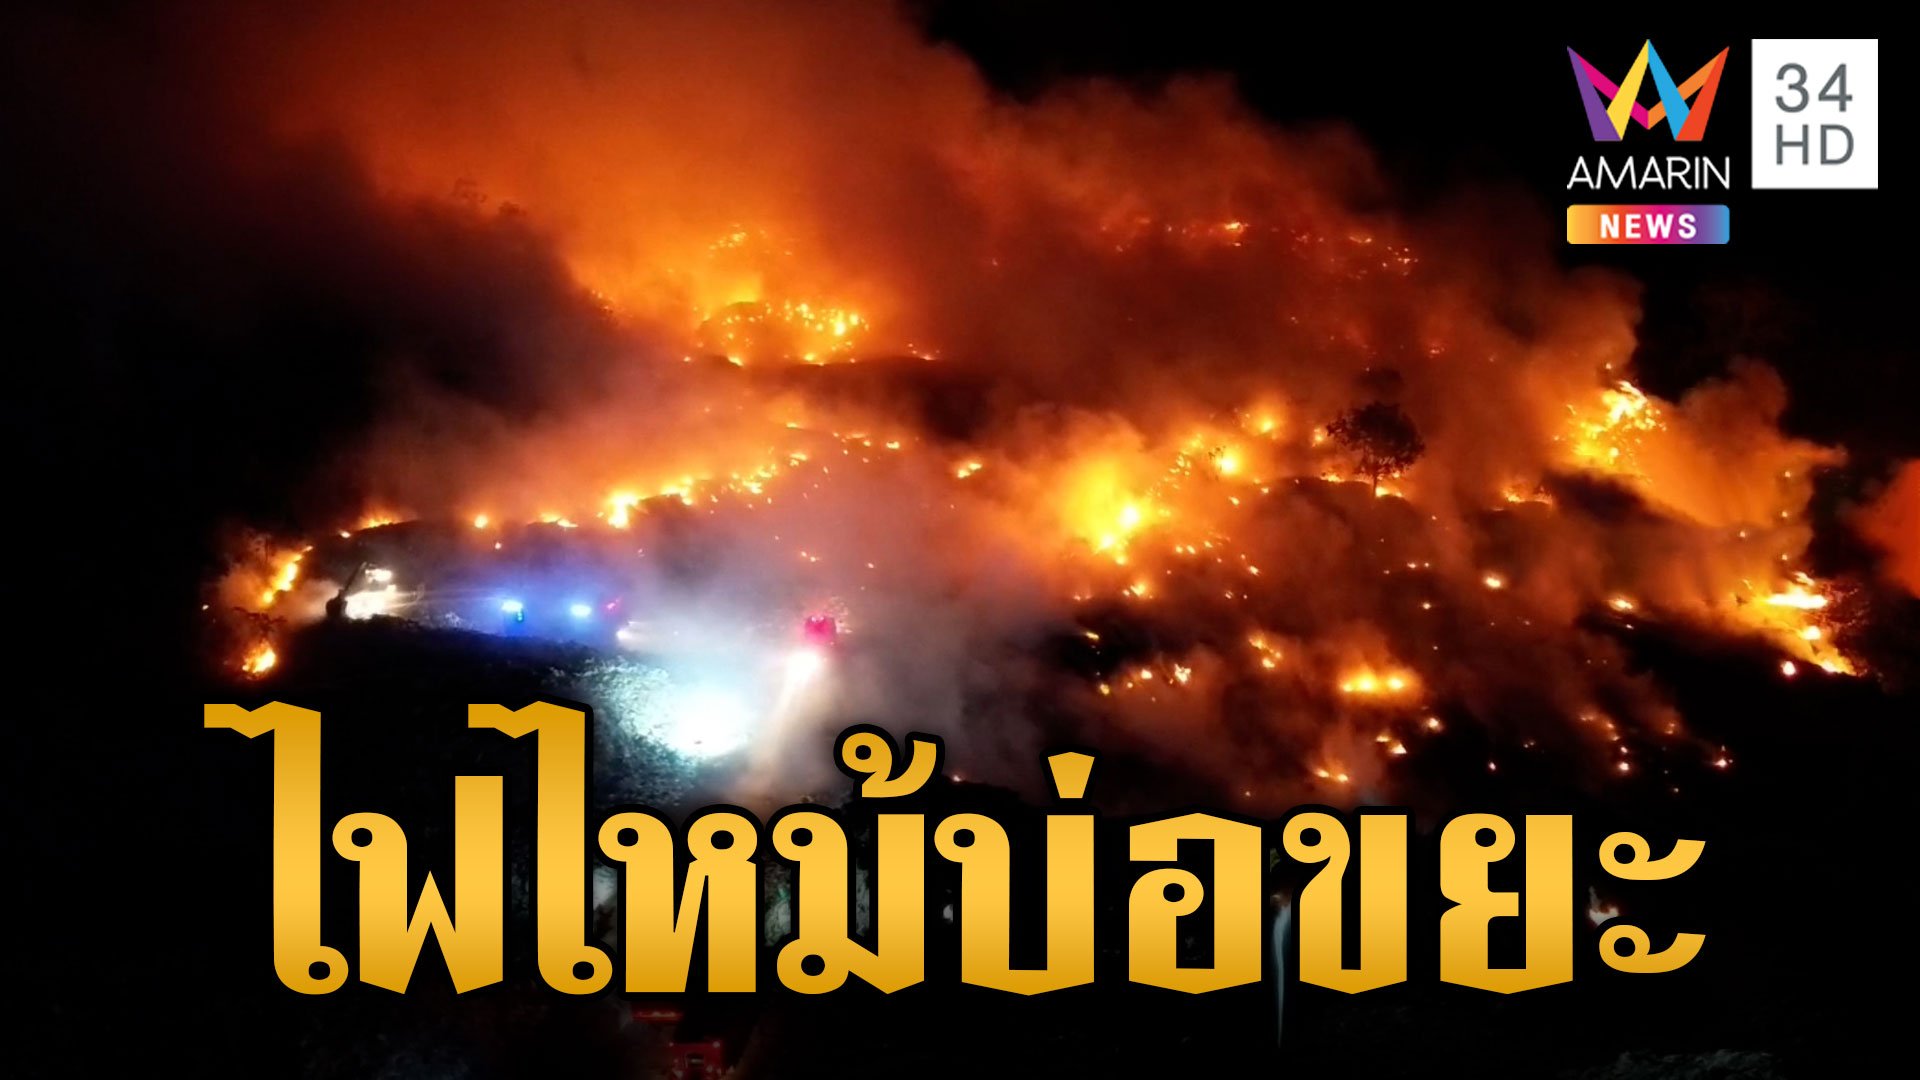 ยังคุมไม่ได้! ไฟไหม้บ่อขยะปราจีนบุรี ชาวบ้านแฉไหม้ถี่ 3 รอบแล้ว  | ข่าวเย็นอมรินทร์ | 25 เม.ย. 67 | AMARIN TVHD34